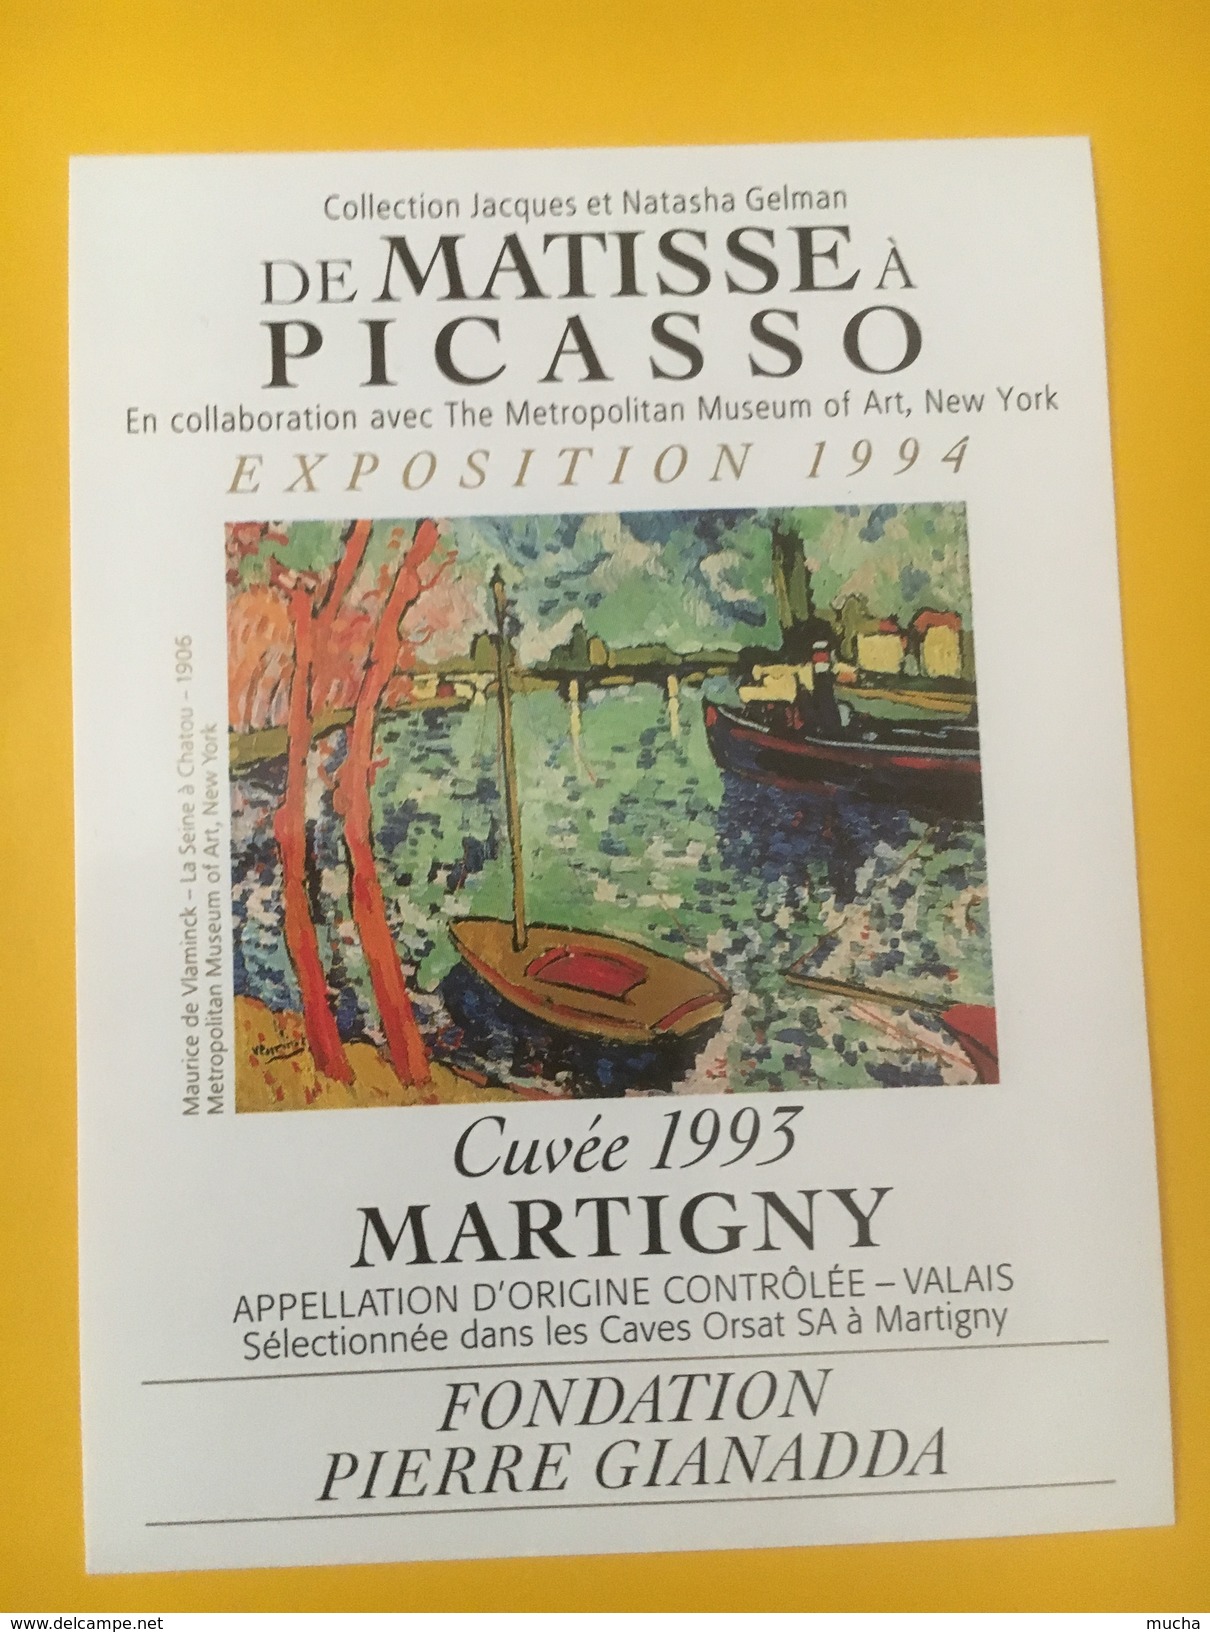 4111 -  Fondation Pierre Gianadda Exposition De Matisse à Picasso 1994 Valais Suisse 2 étiquettes - Art